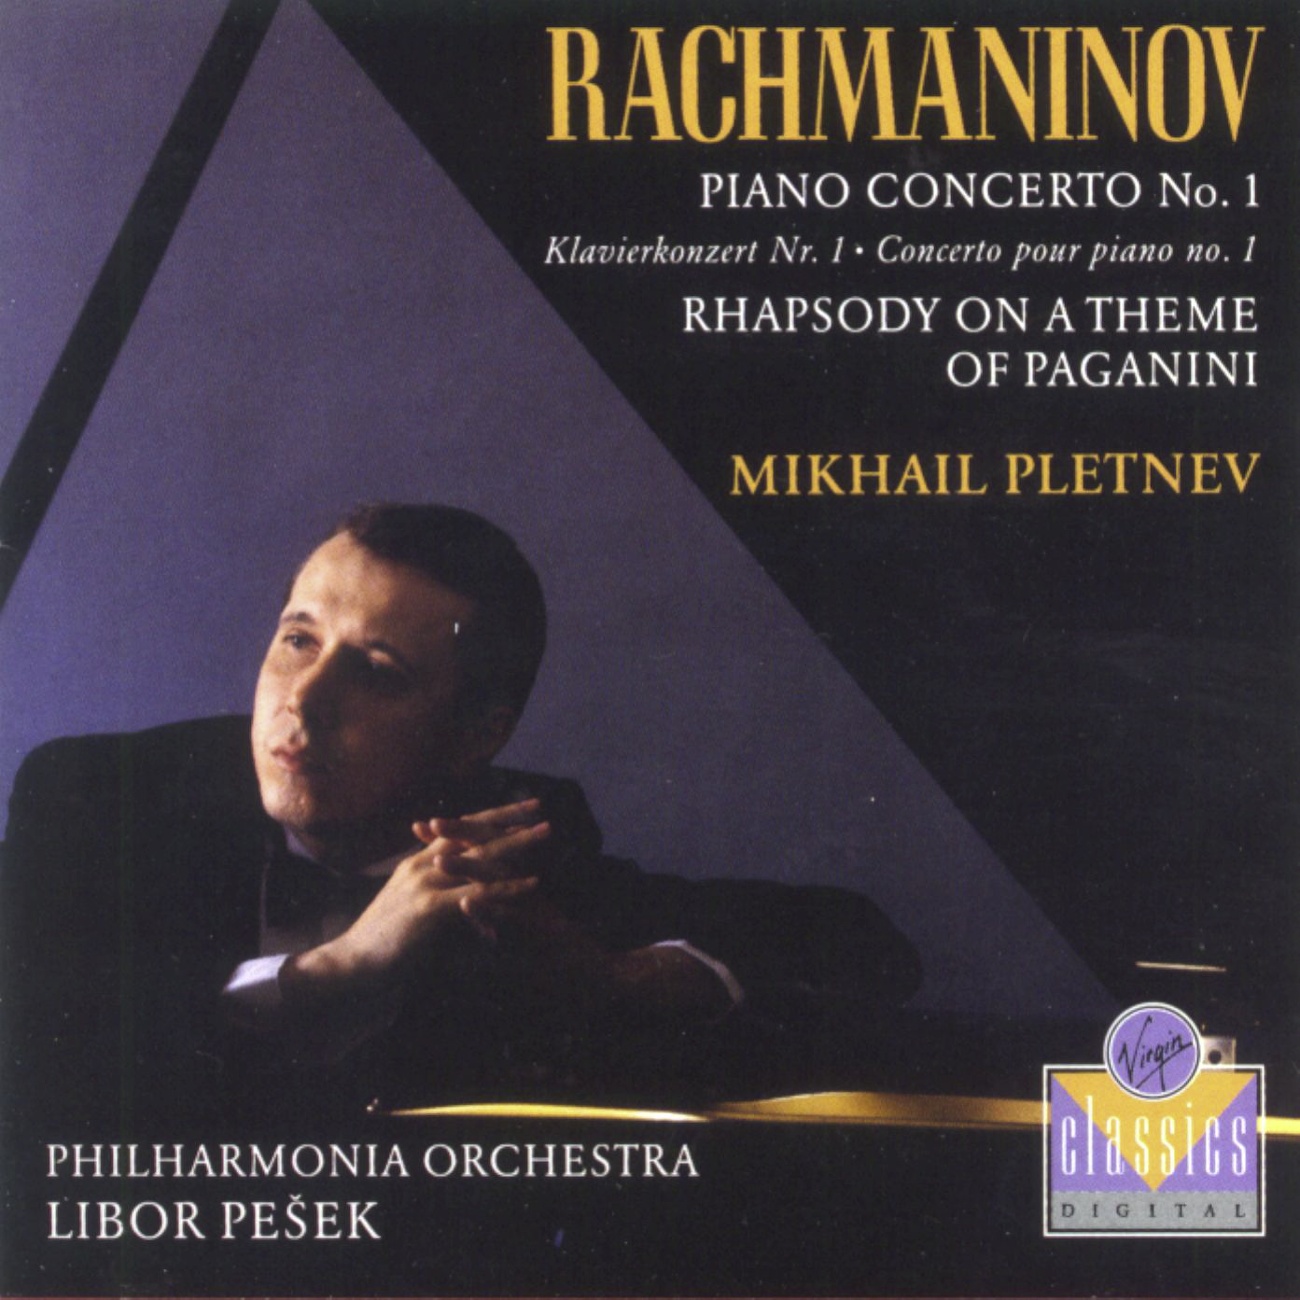 Rhapsody on a Theme of Paganini: Variation VII - Meno mosso, a tempo moderato